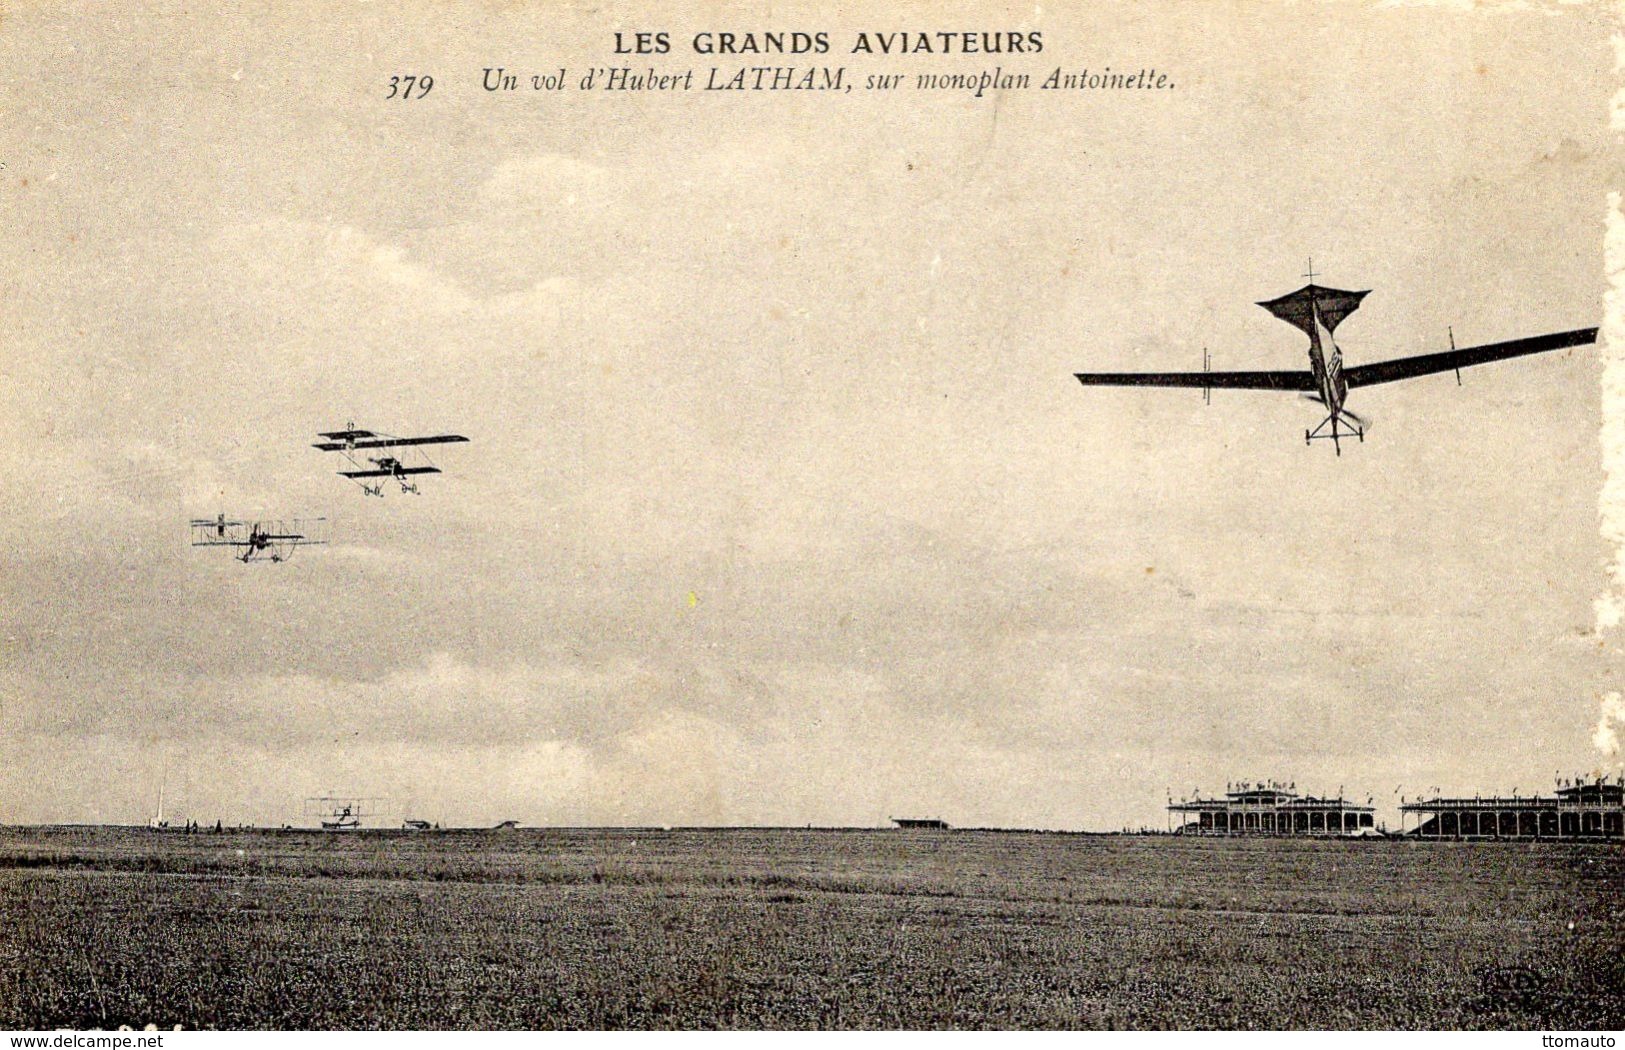 Les Grands Aviateurs  -  Un Vol D'Hubert Latham Sur Monoplan Antoinette  -  CPA - Flieger